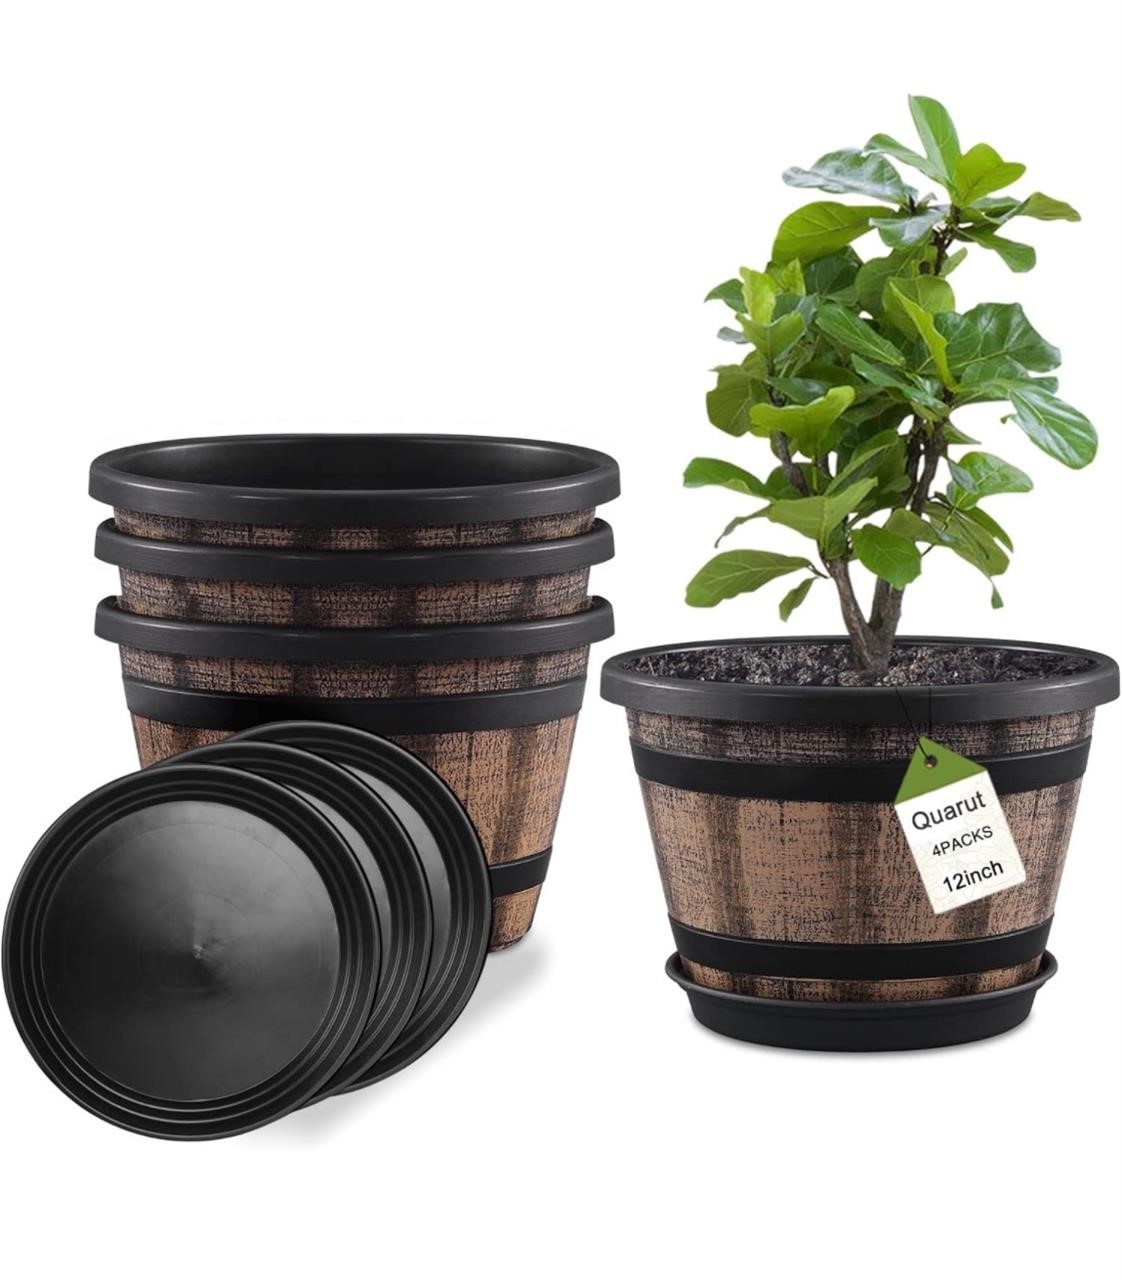 Quarut Plant Pots Set of 4 Pack 12 inch,Large